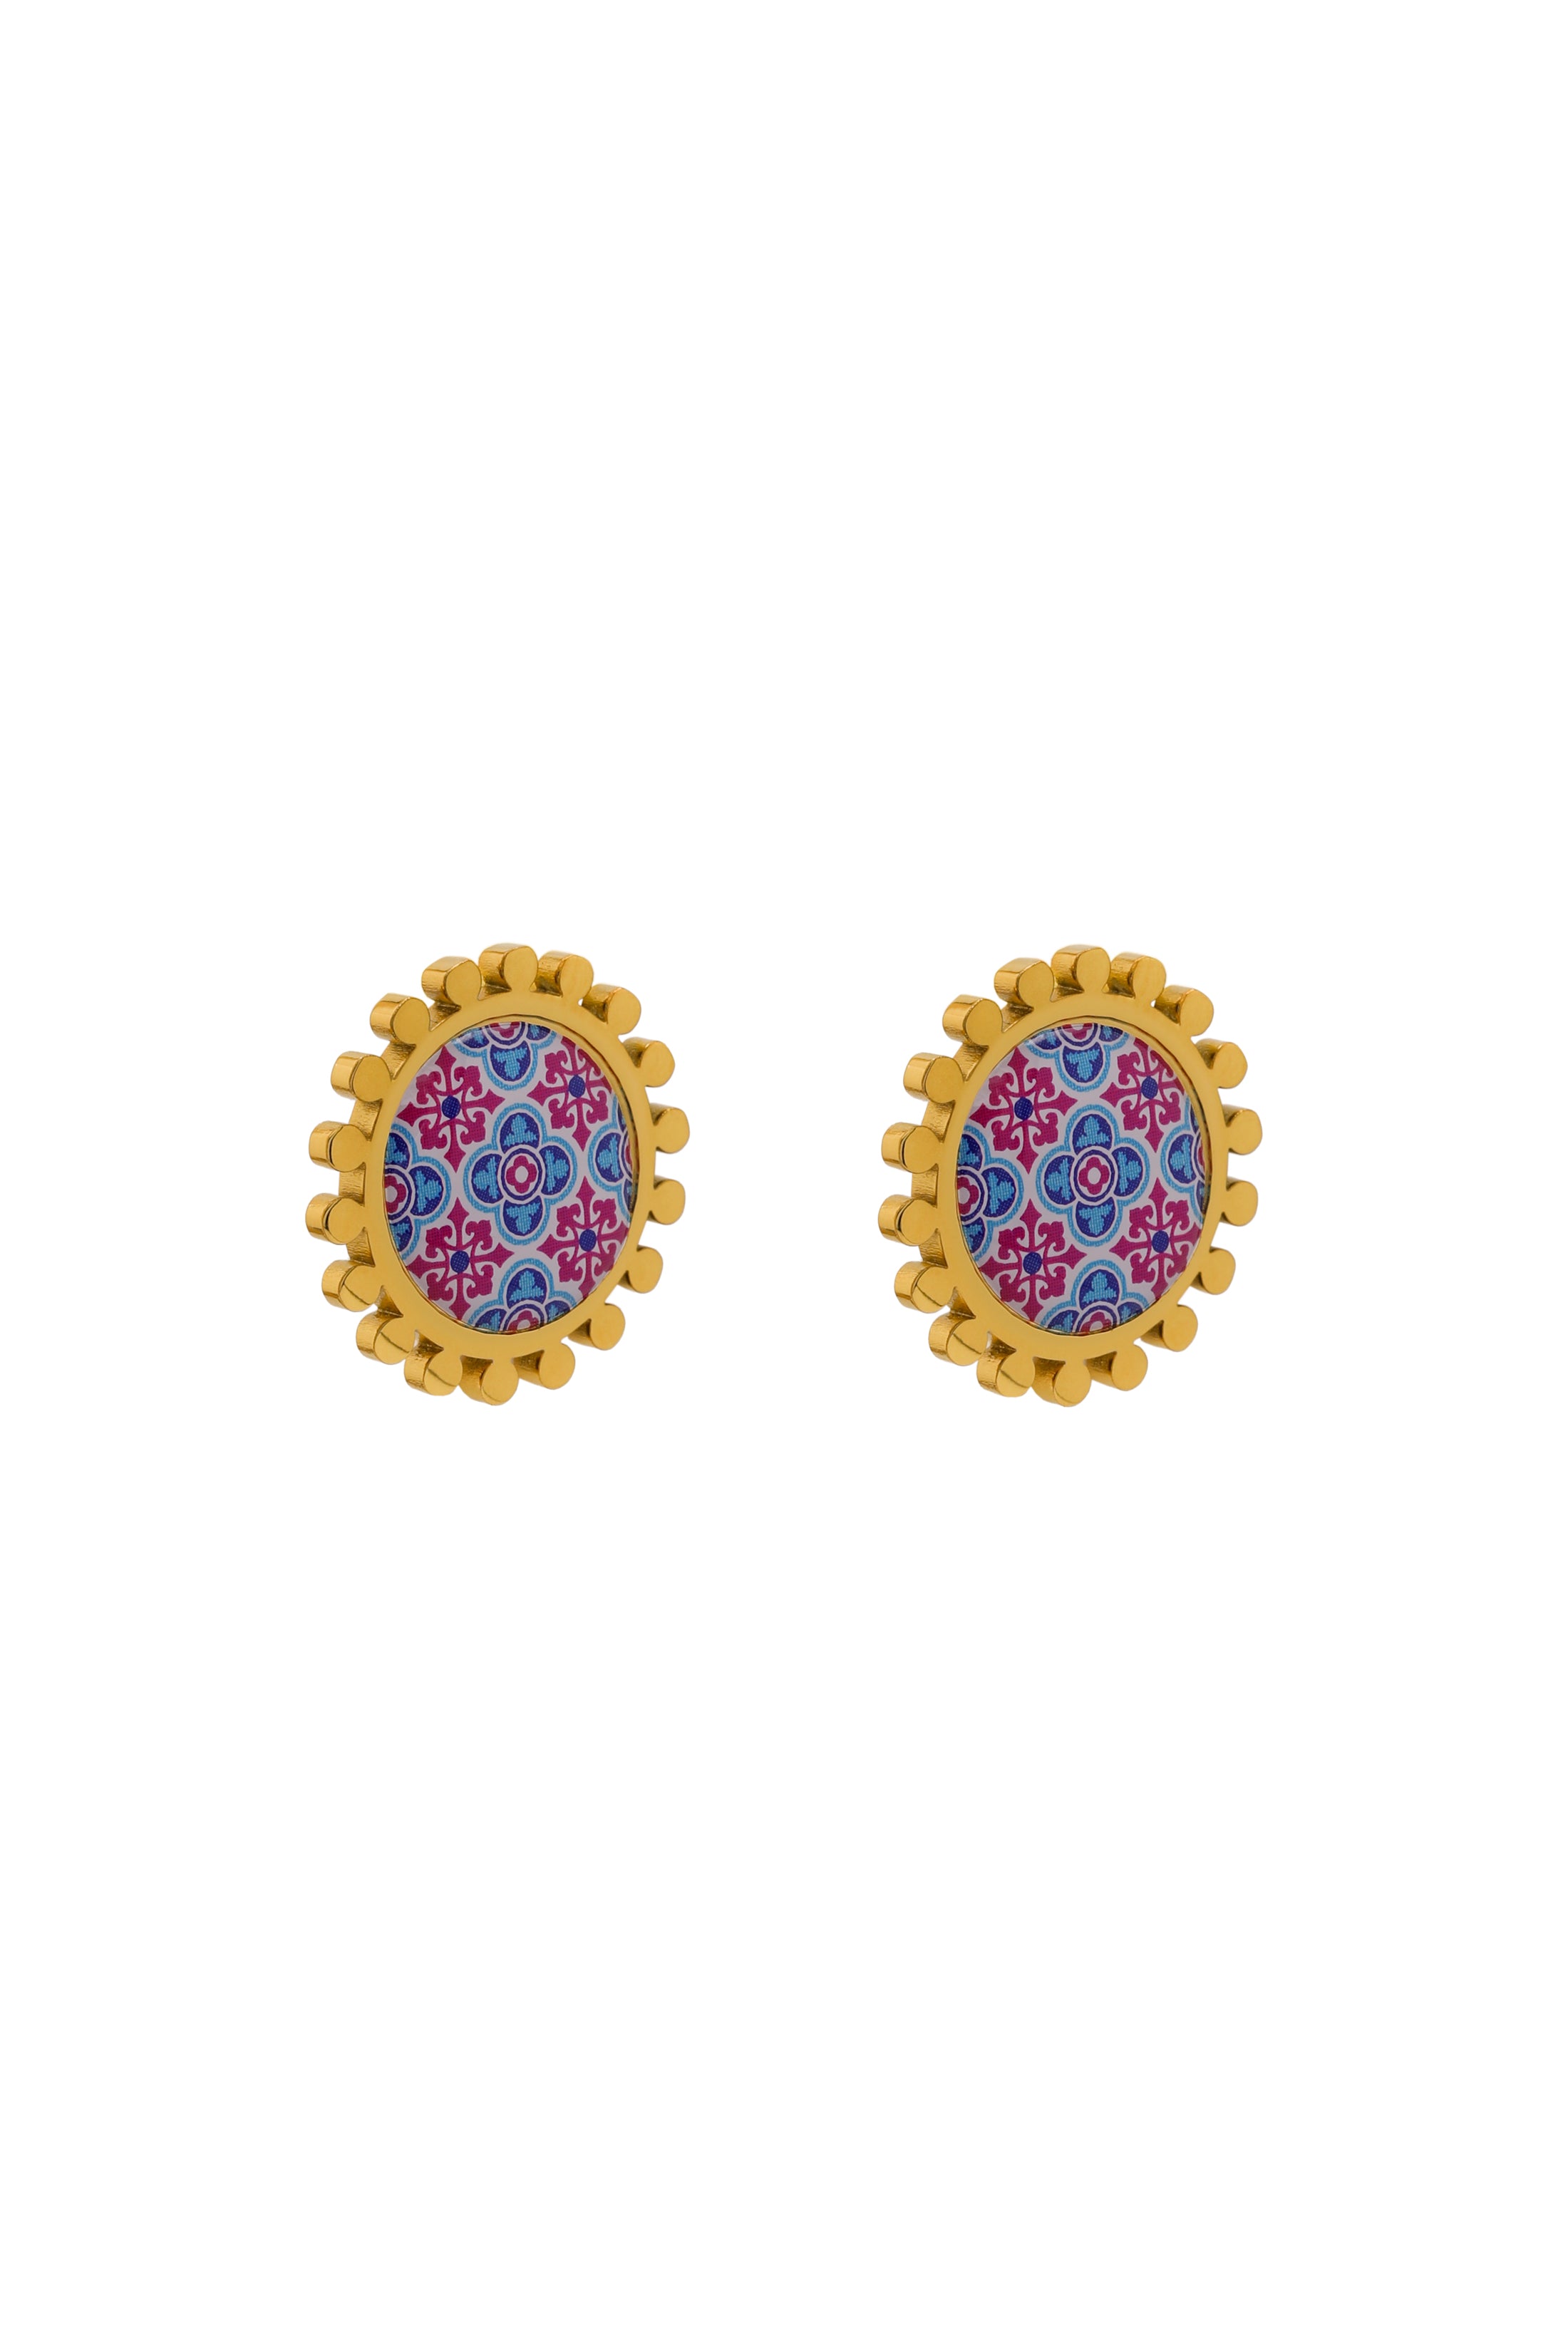 Maltese Tile Print Stud Earring Set - Fuchsia &amp; Blue